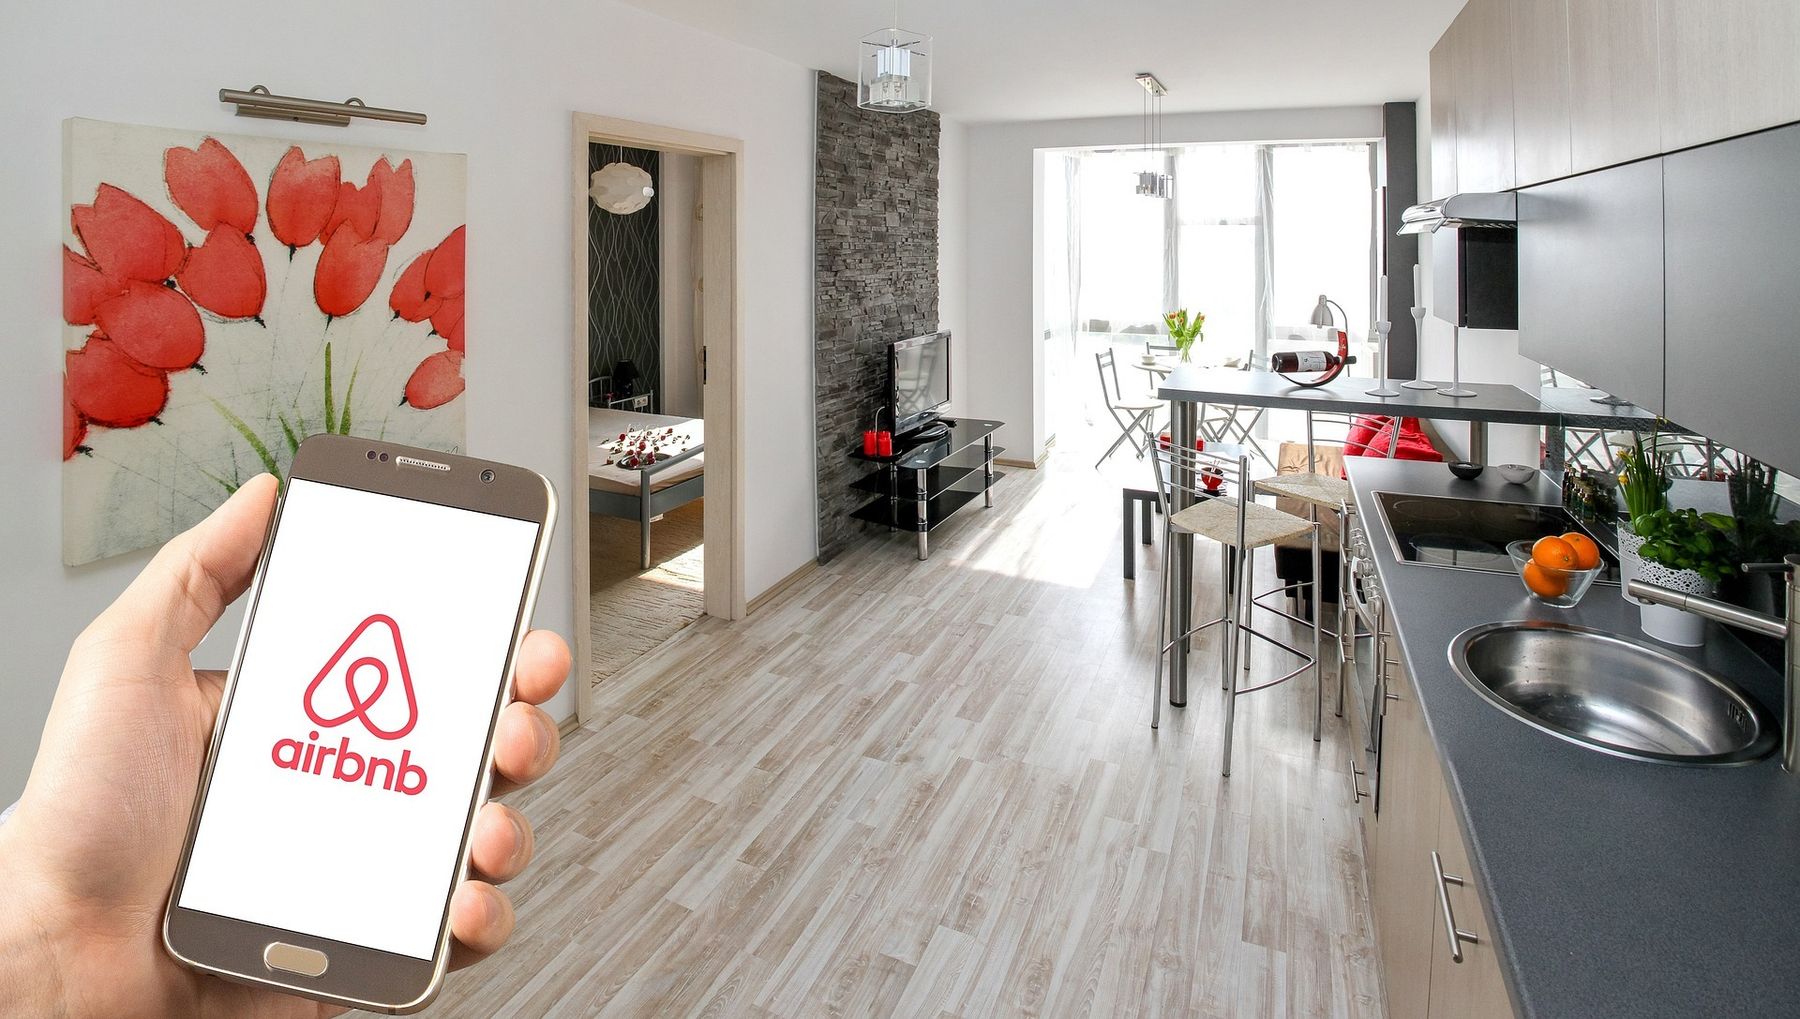 Finanzbehörden Kontrollieren Airbnb Vermieter Radio Prag